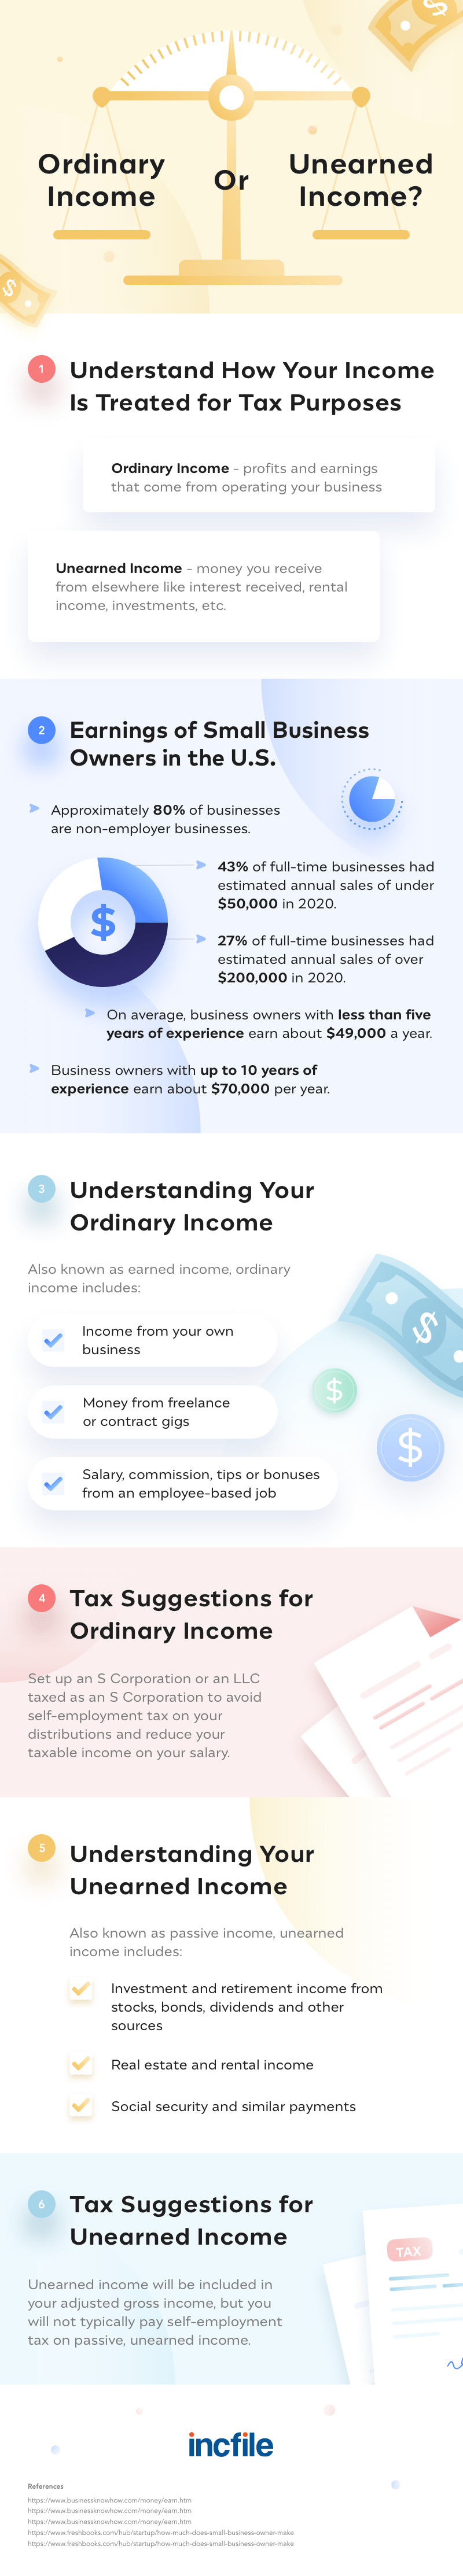 ordinary income vs unearned income